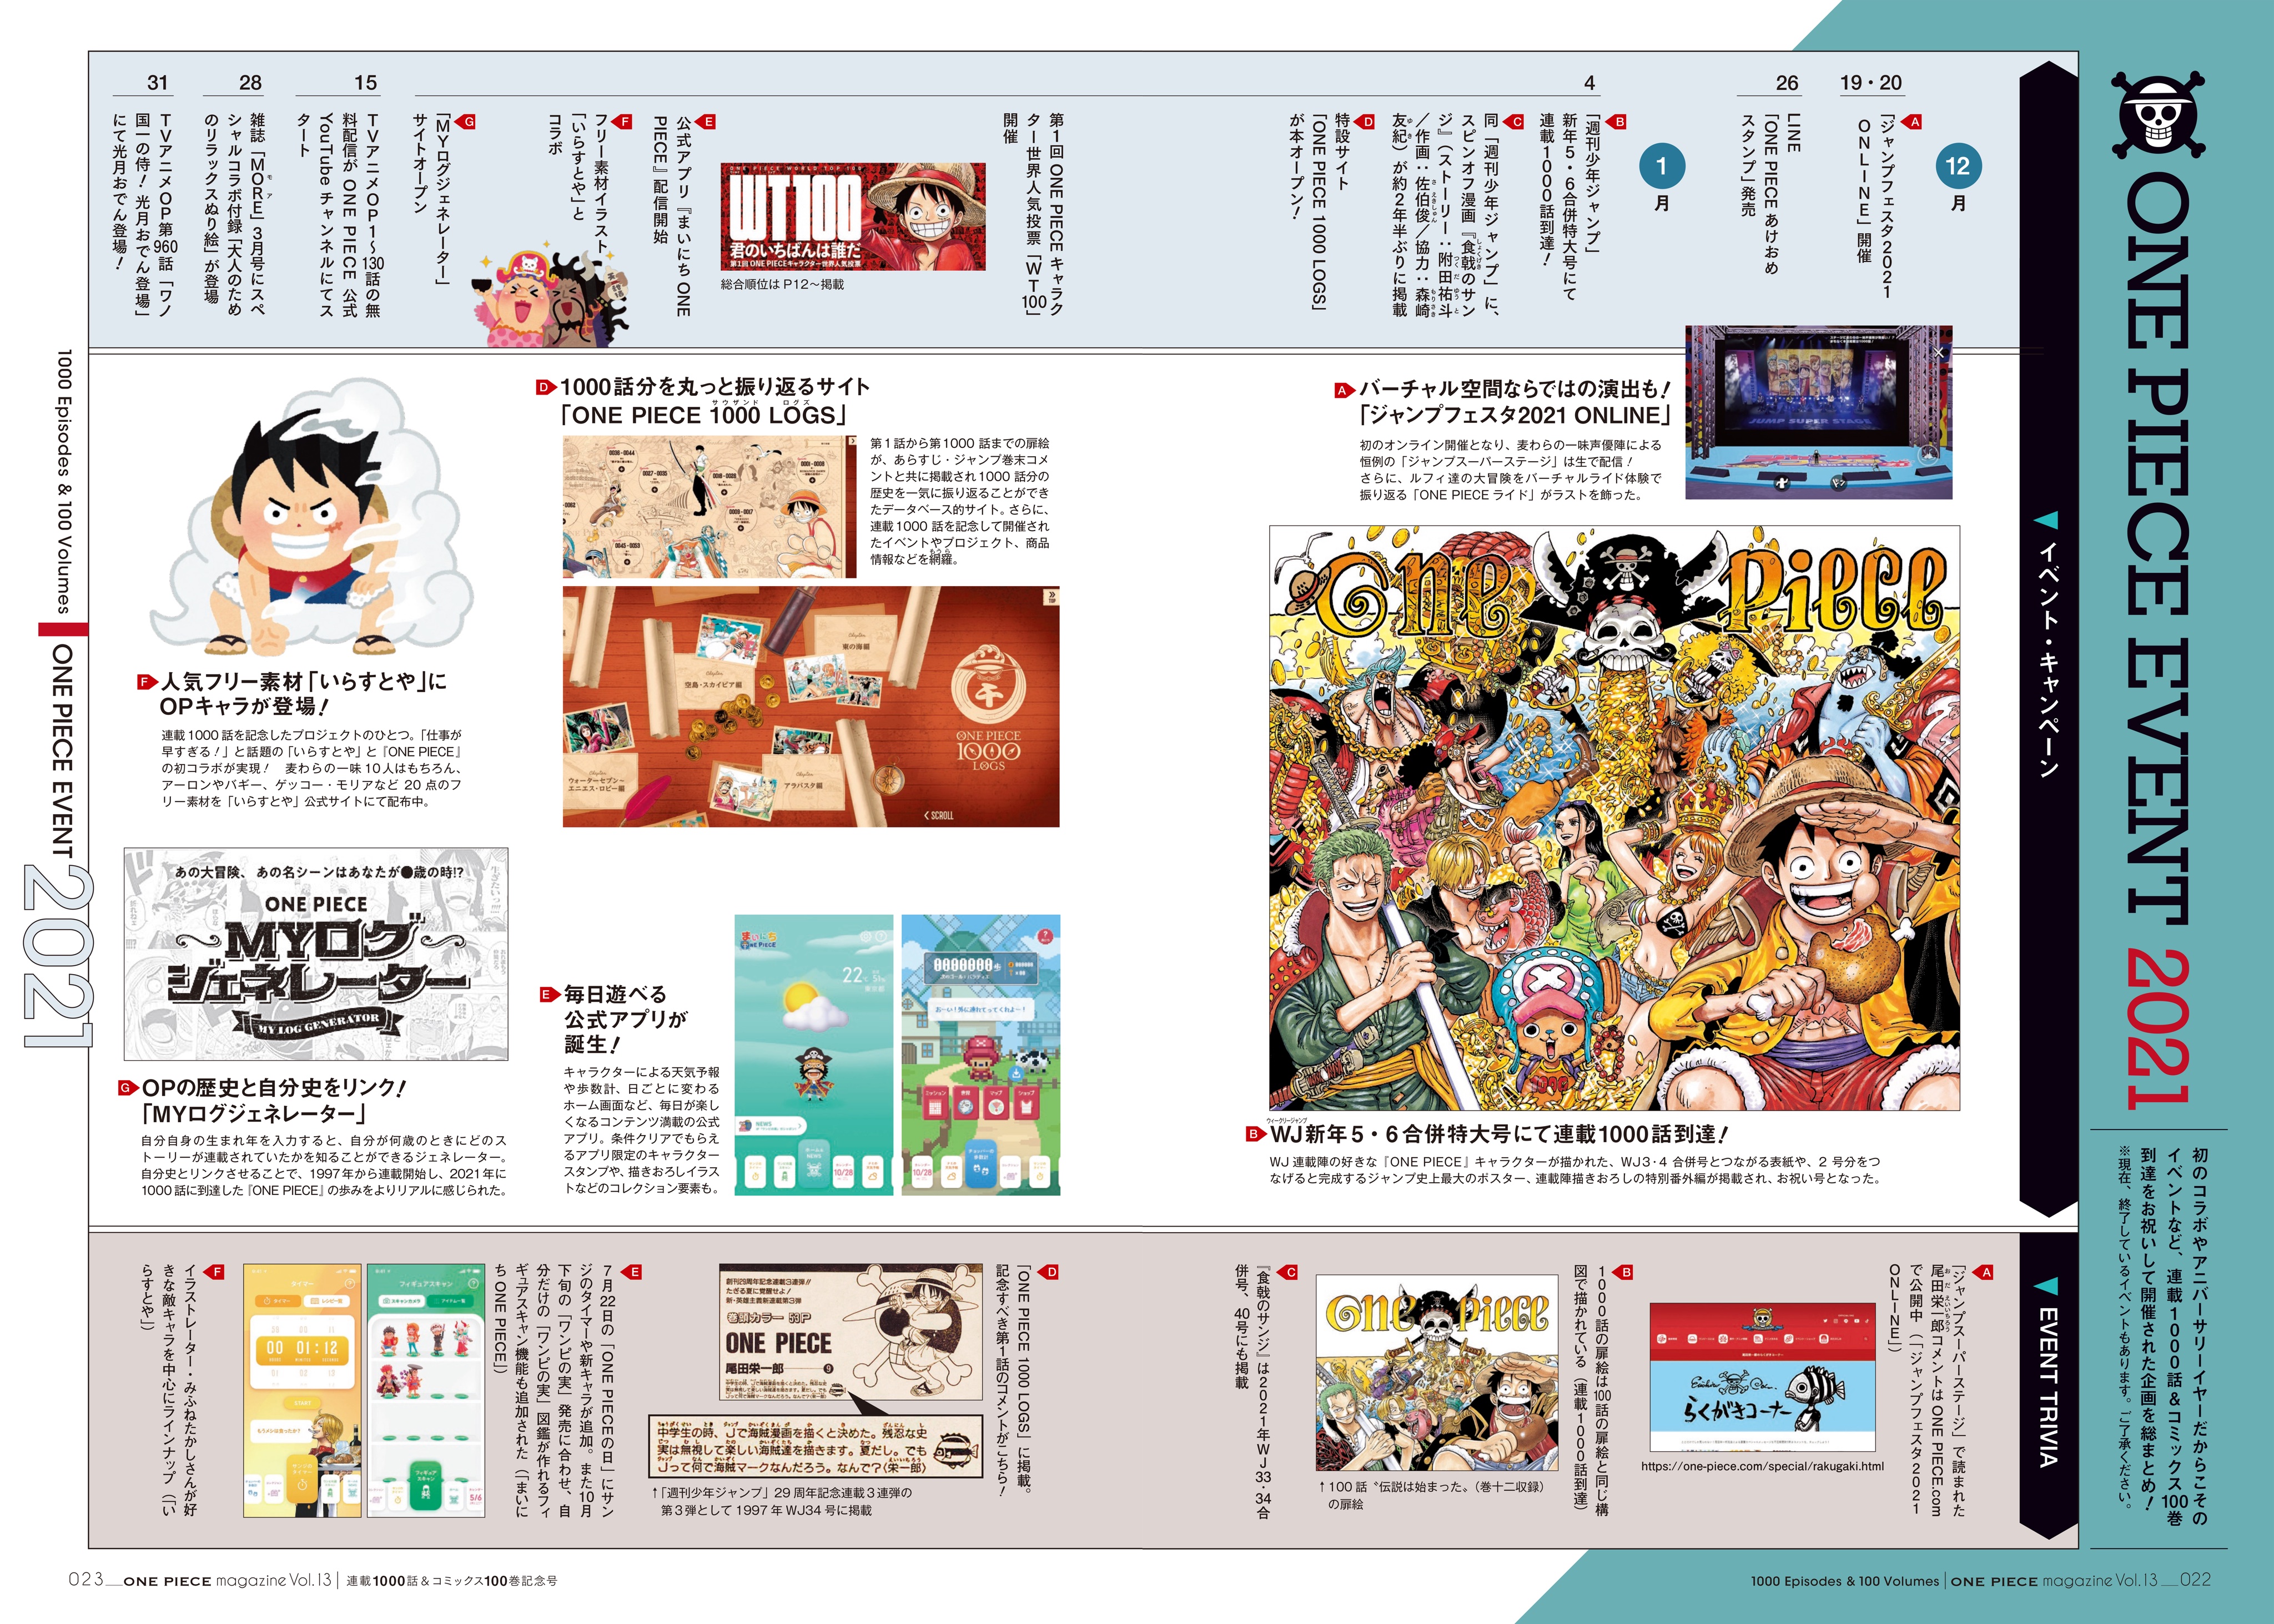 One Piece スタッフ 公式 Official Onepiece 21 ワンピース マガジン Vol 13 より 21年に起こった出来事年表を公開 原作1000話連載 コミックス100巻発売 Tvアニメ1000話放送 など 記念ごとも盛りだくさんの1年でした 本年も